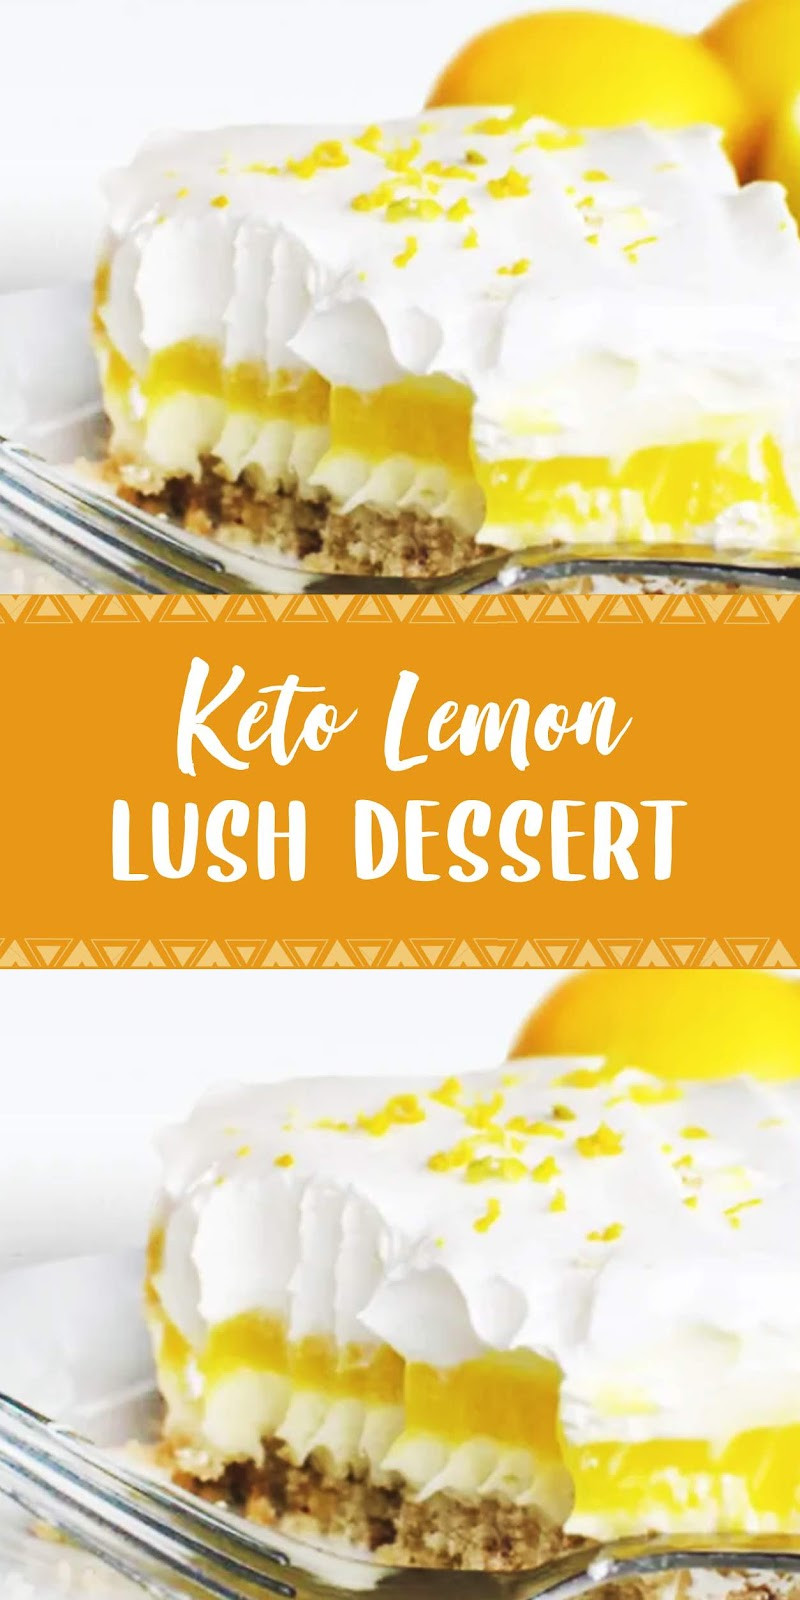 Lemon Keto Dessert
 Keto Lemon Lush Dessert Healthy